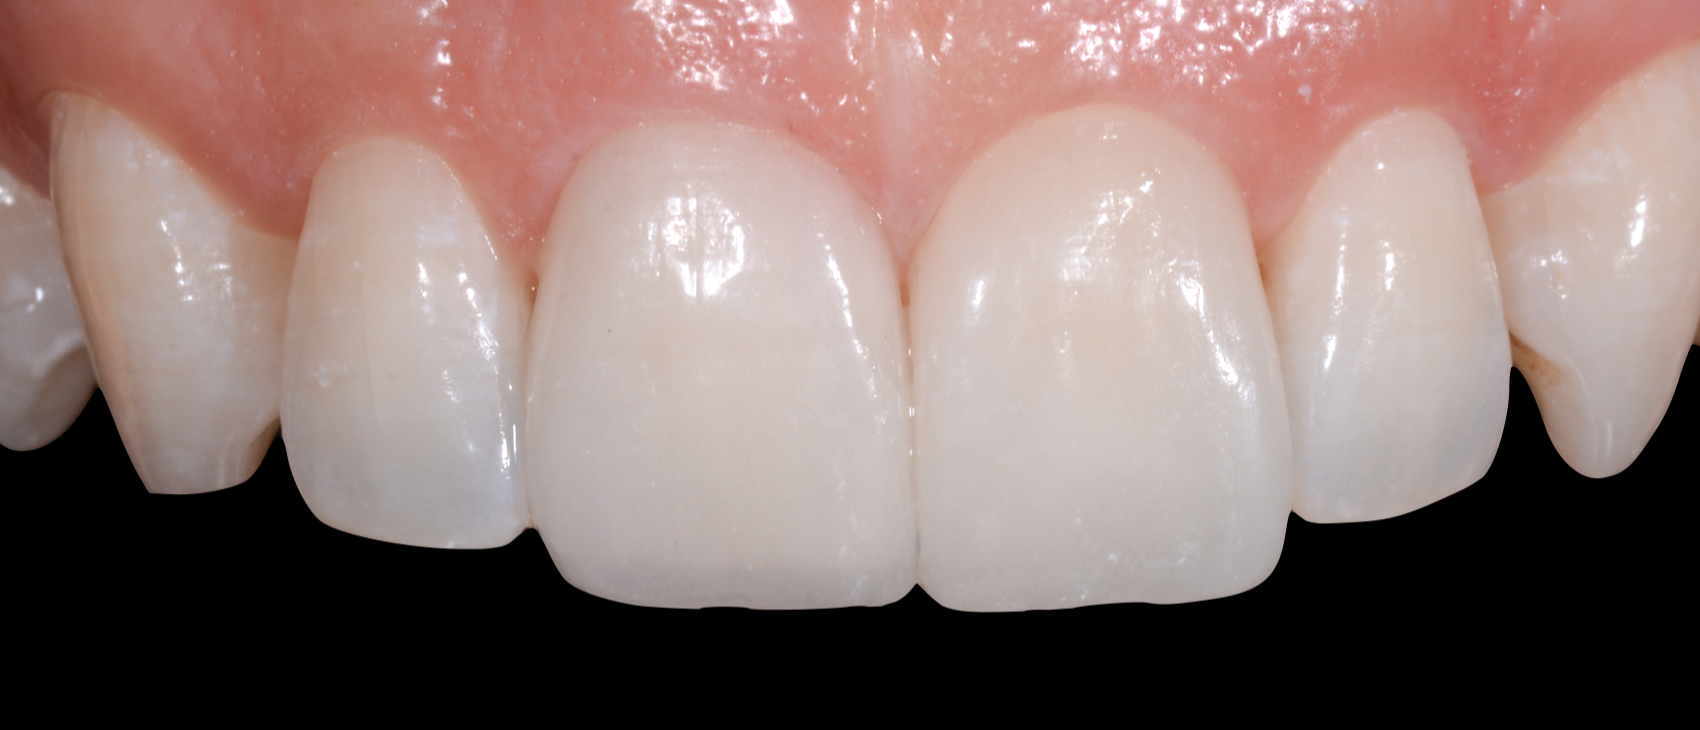 Le faccette dentali: l'ortodonzia Istantanea